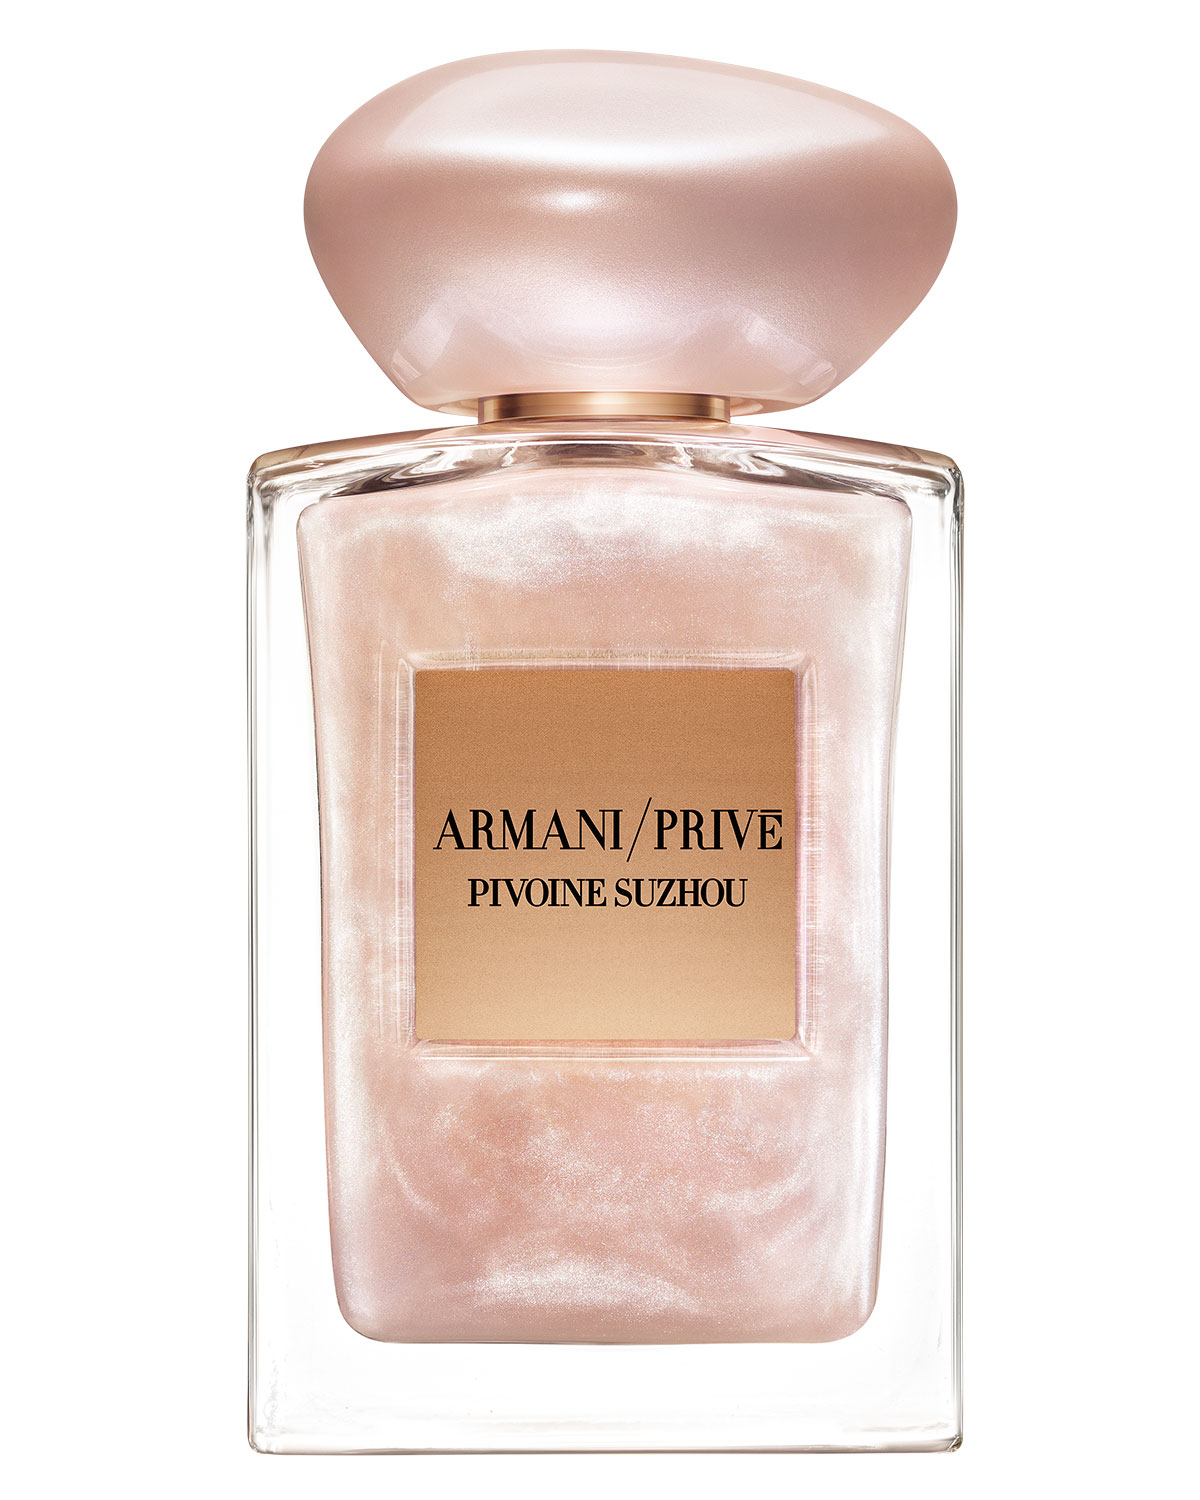 Armani Prive Pivoine Suzhou Soie de Nacre Limited Edition Giorgio